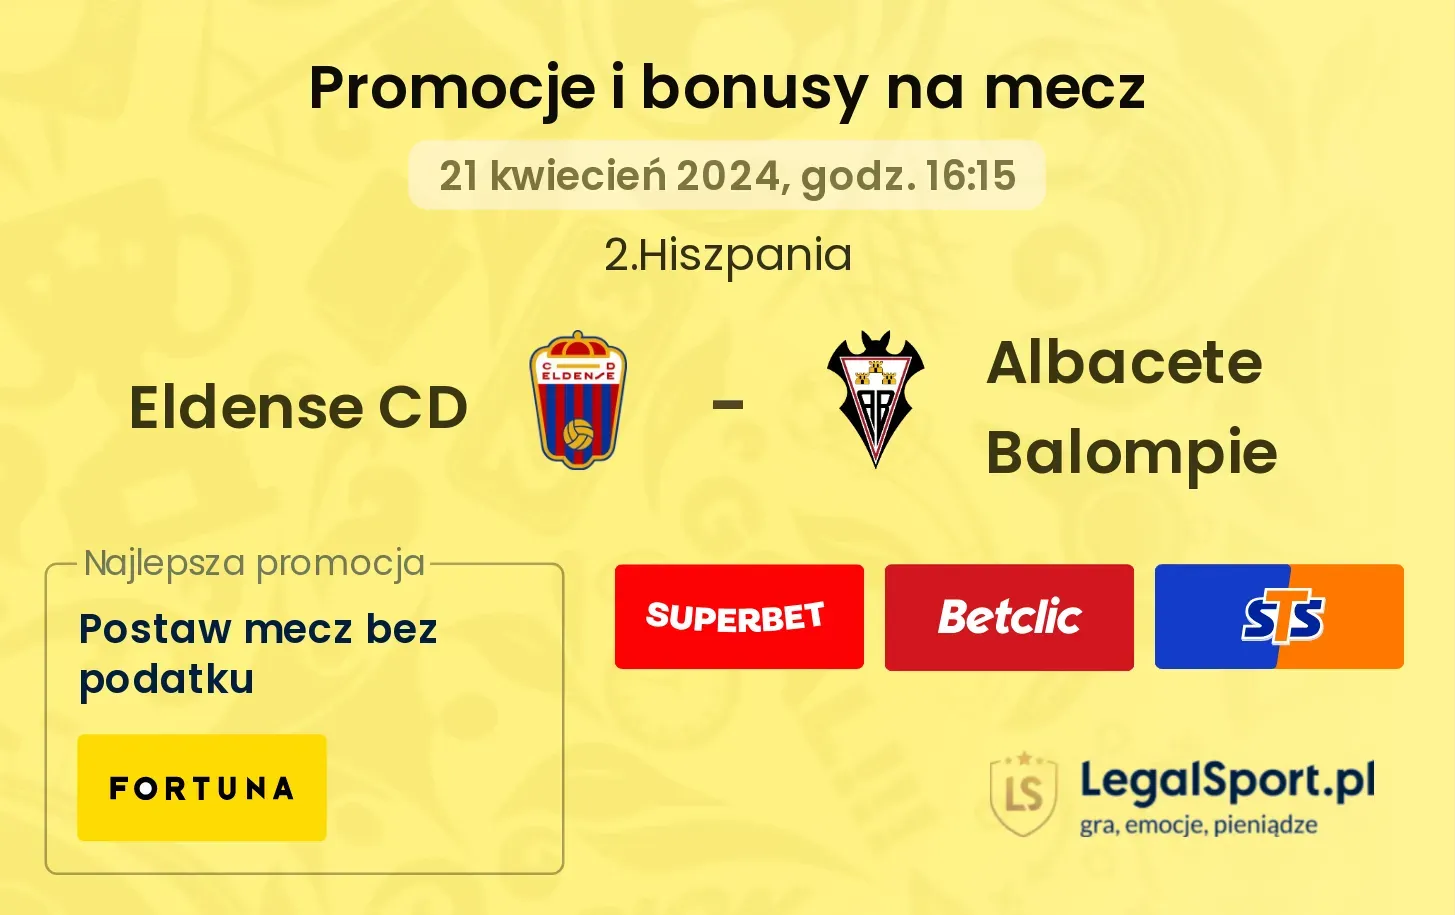 Eldense CD - Albacete Balompie promocje bonusy na mecz